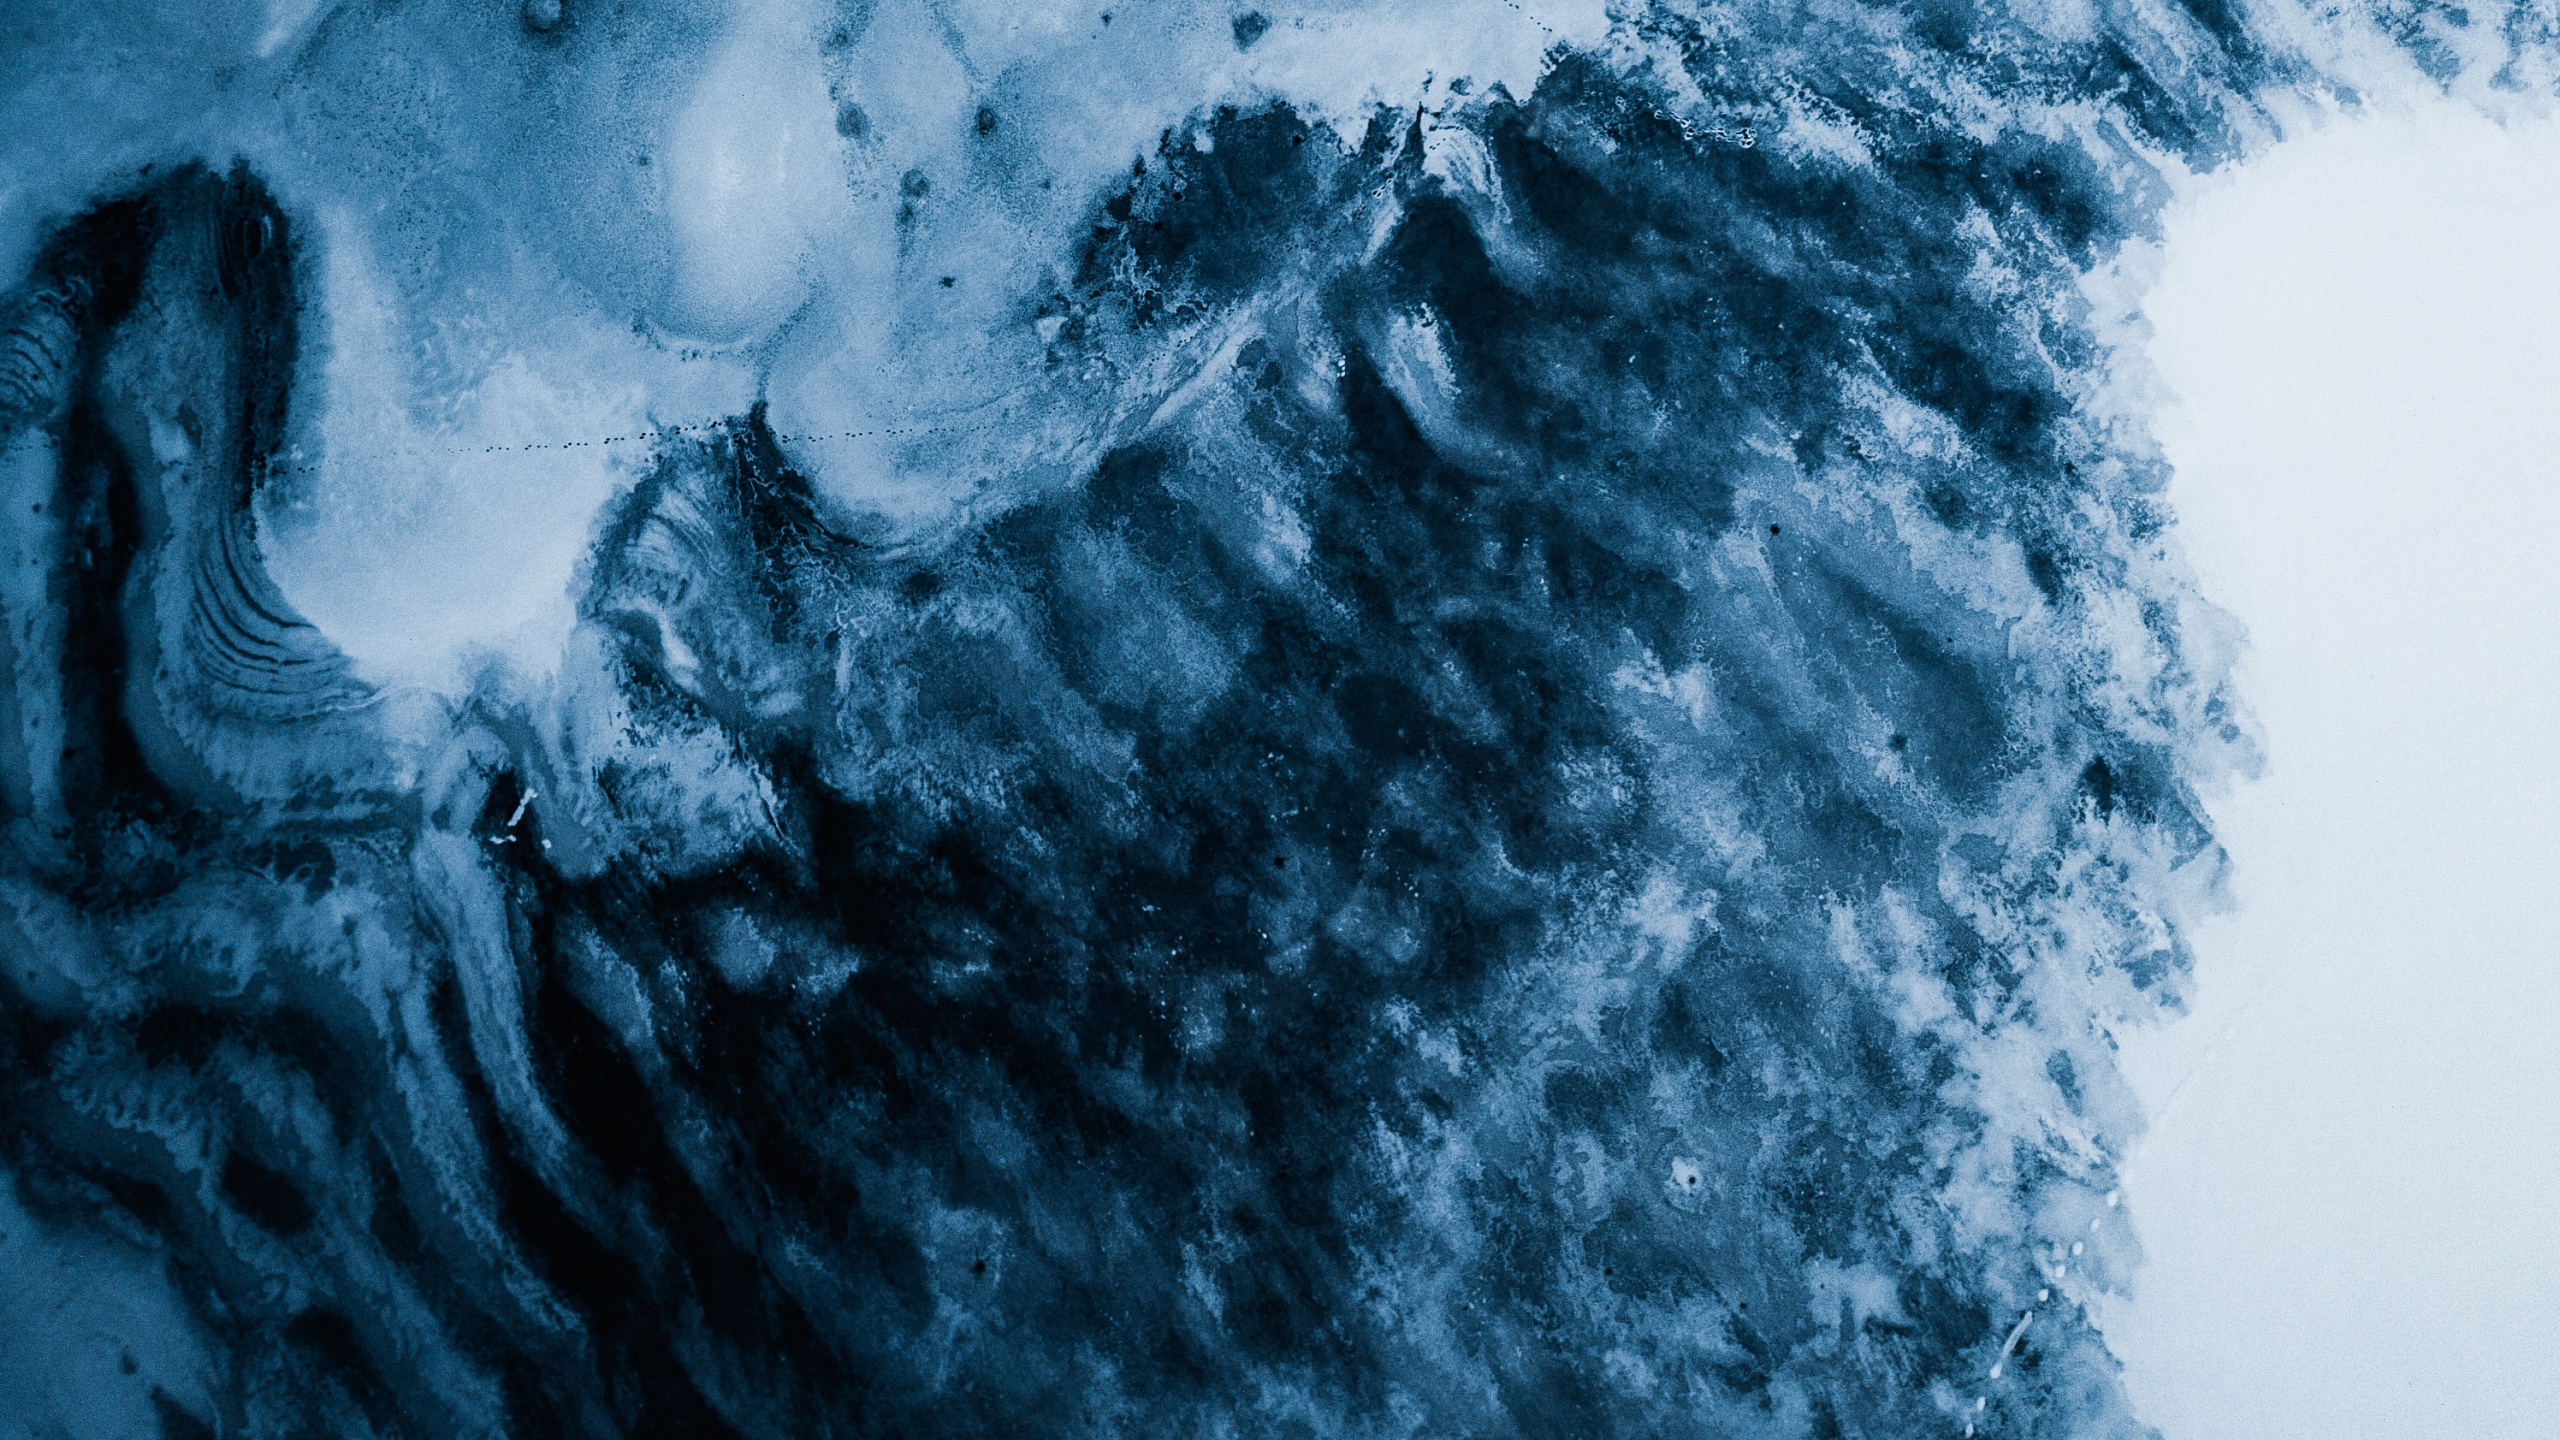 Gletscher, Blau, Wasser, Cloud, Einfrieren. Wallpaper in 2560x1440 Resolution